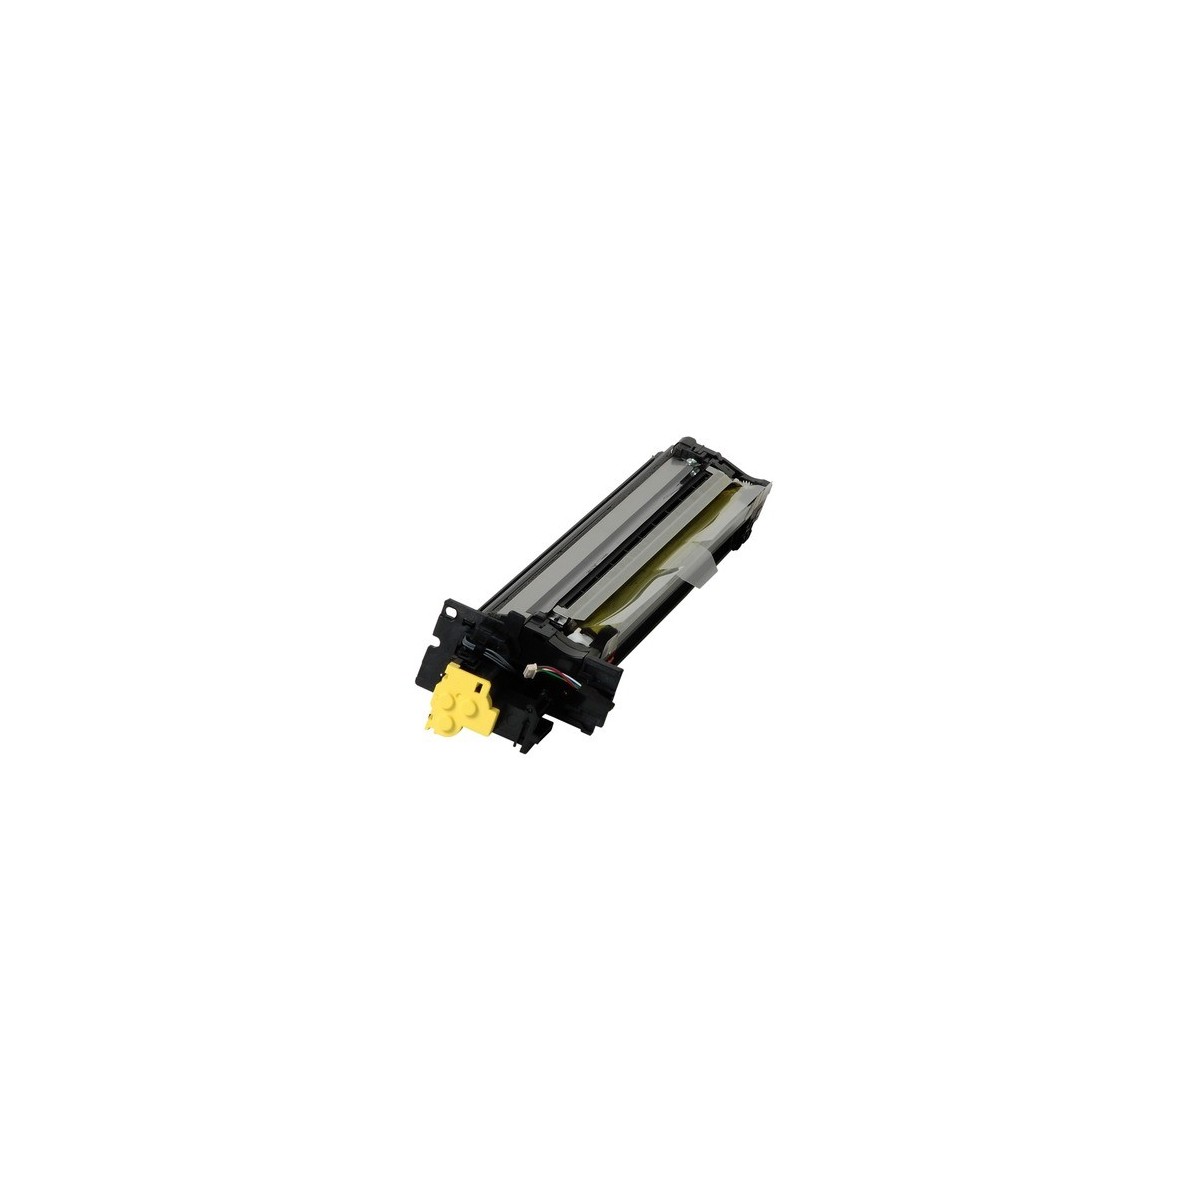 Kyocera DV-865Y - Laser - Black,Yellow - Kyocera - - Kyocera TASKalfa 250ci - Kyocera TASKalfa 300ci - Copystar CS250ci - Copyst